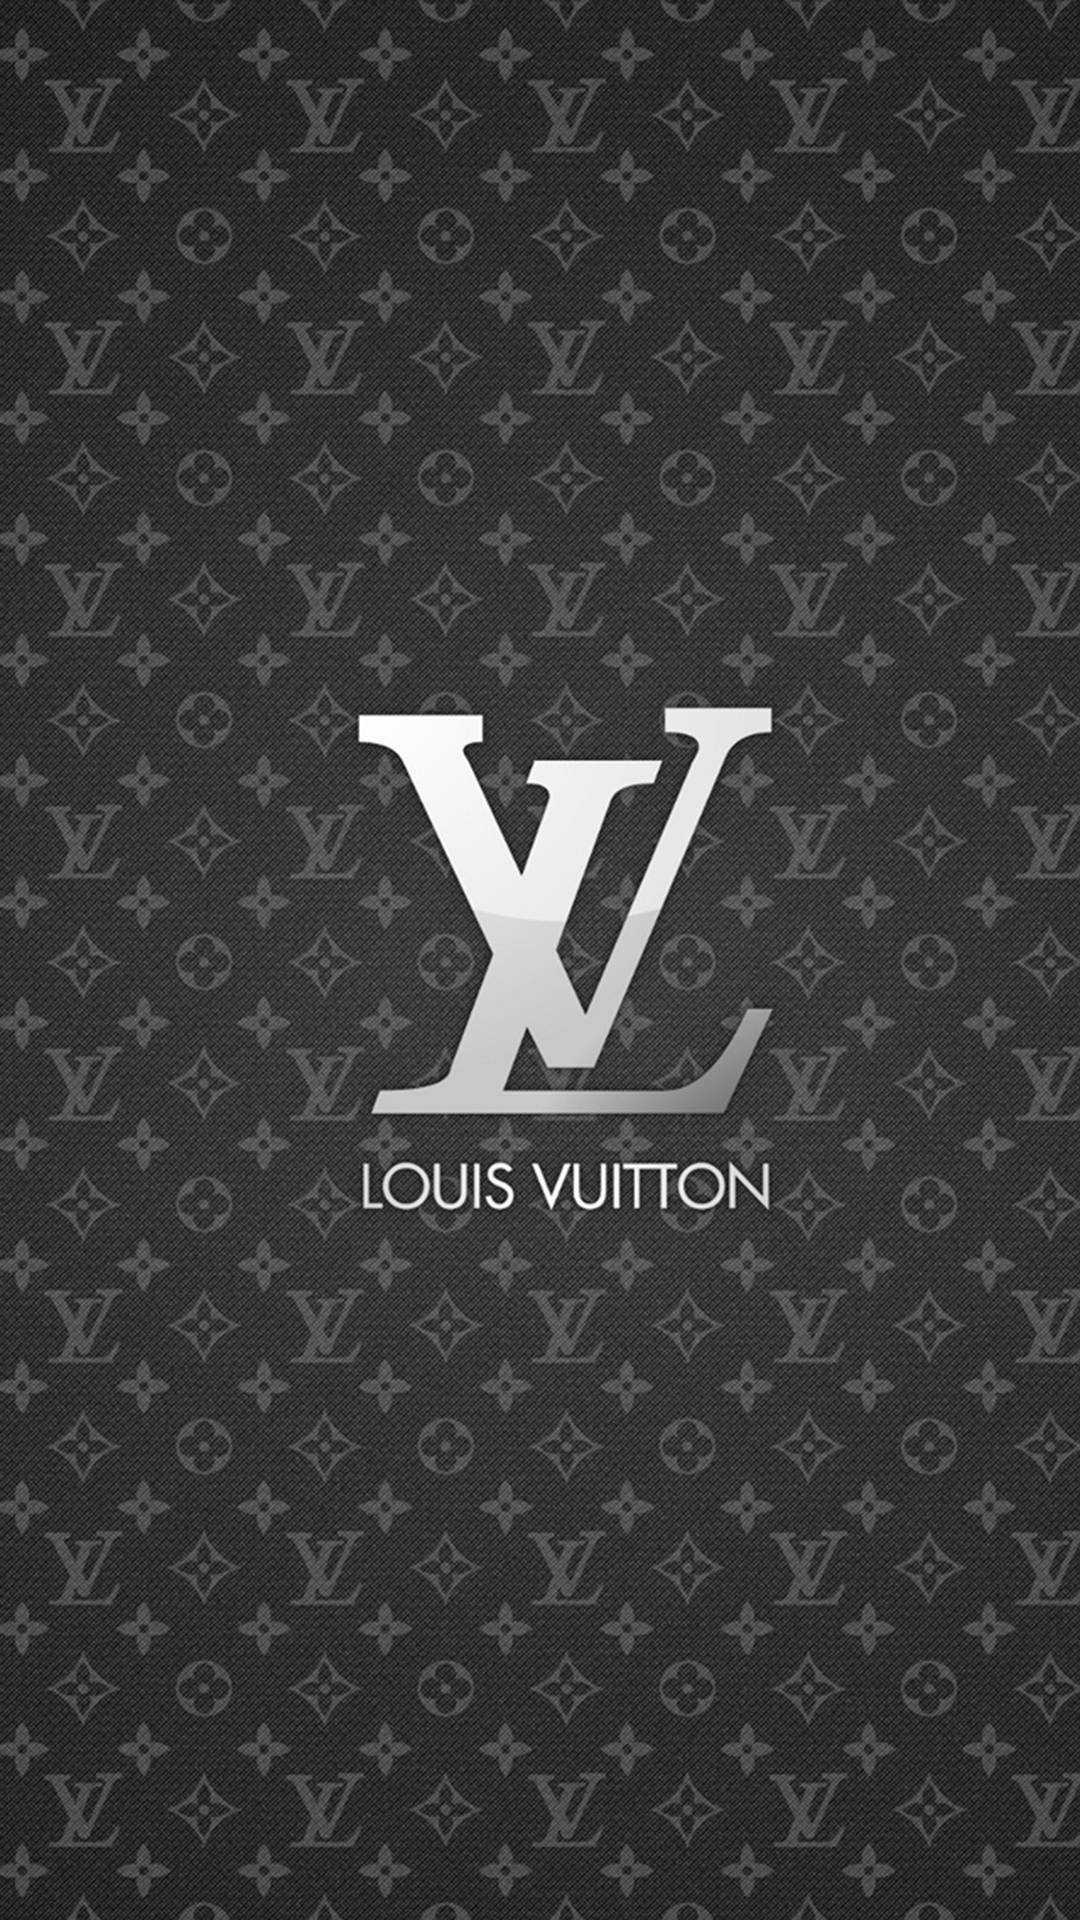 Teléfono Louis Vuitton Fondo de pantalla